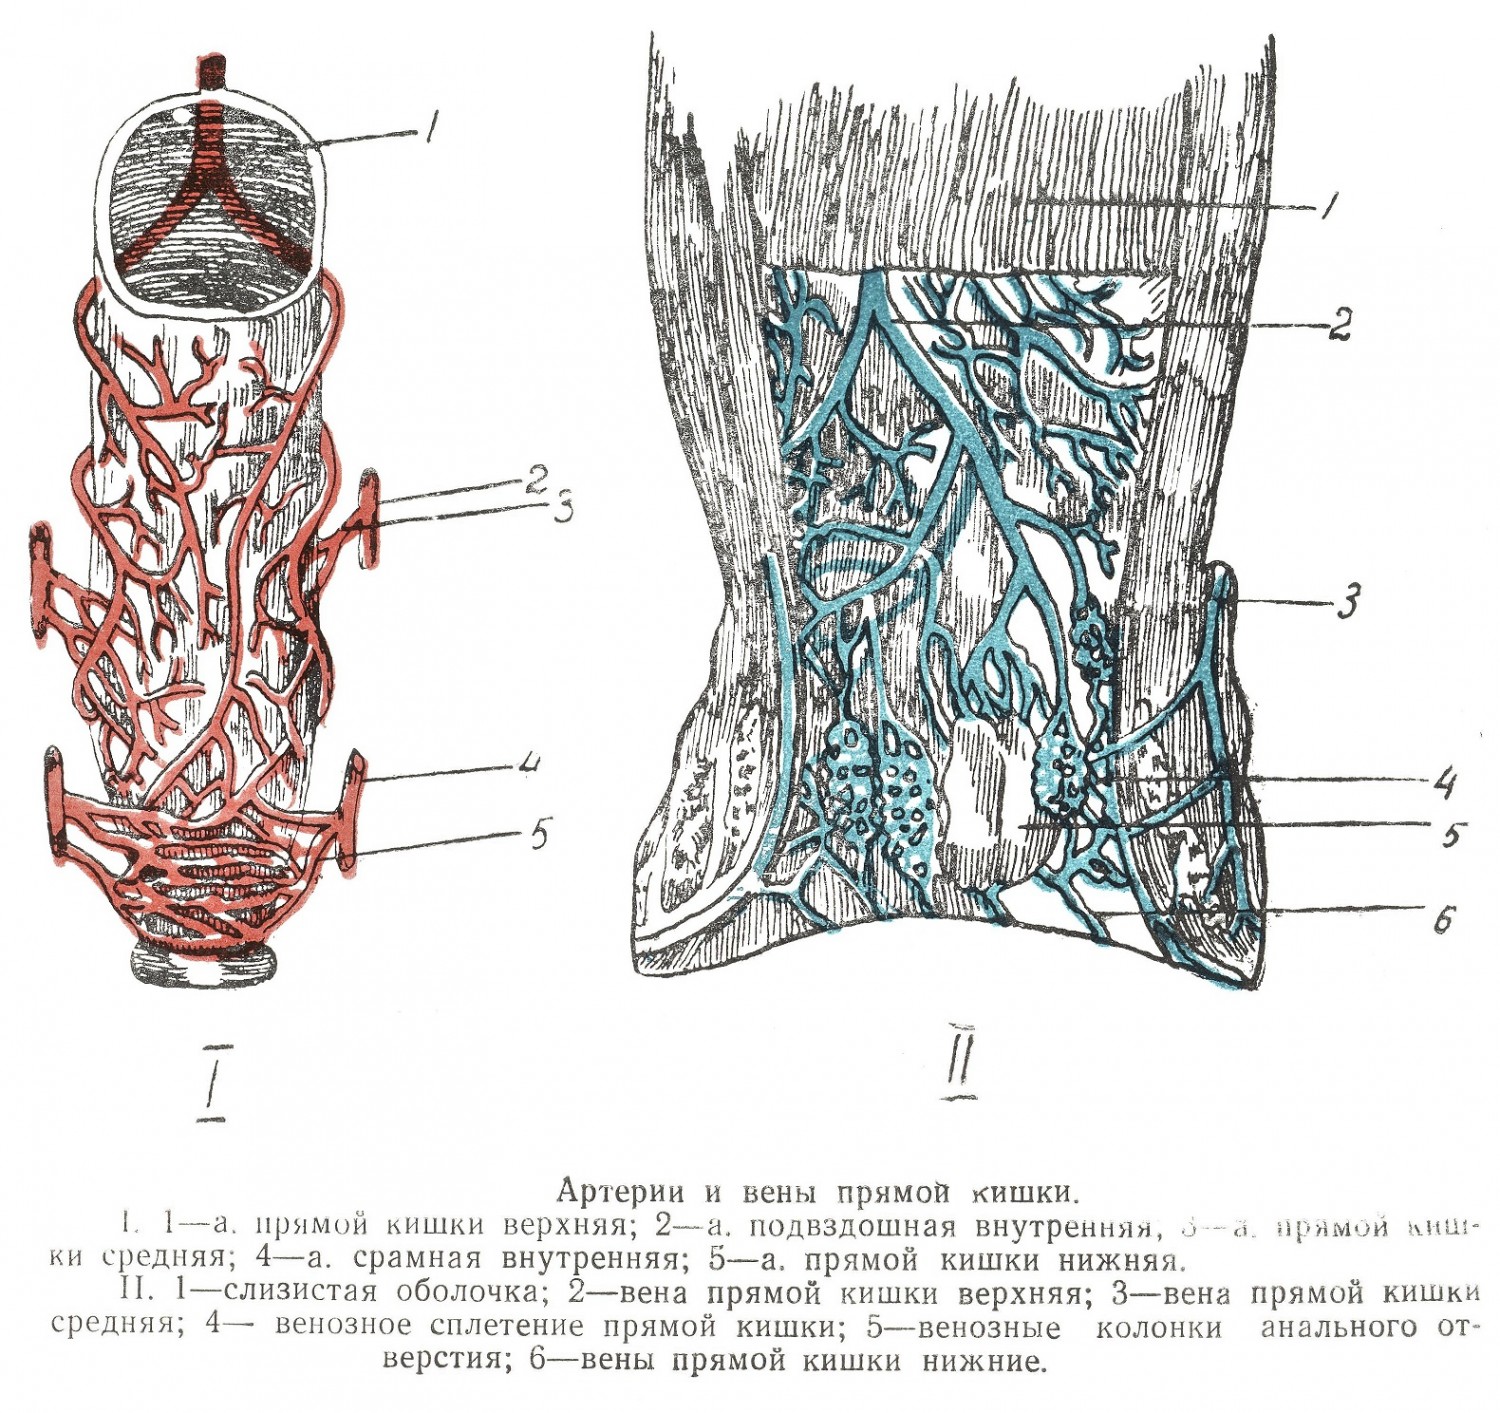 Артерии и вены прямой кишки